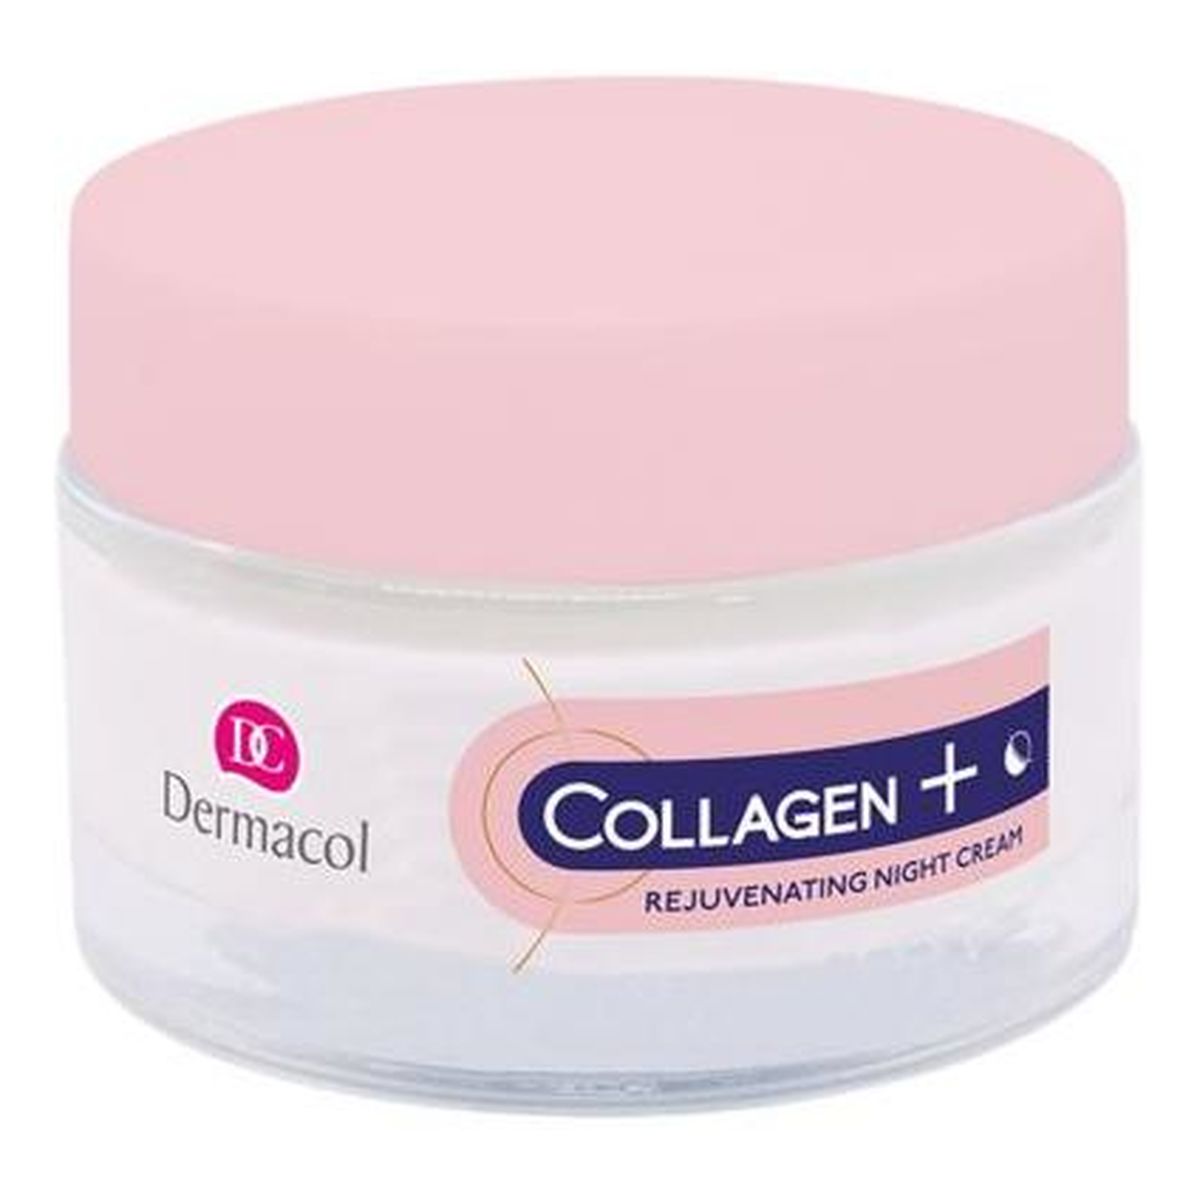 Dermacol Collagen Plus Intensive Rejuvenating Night Cream intensywnie odmładzający Krem na noc 50ml